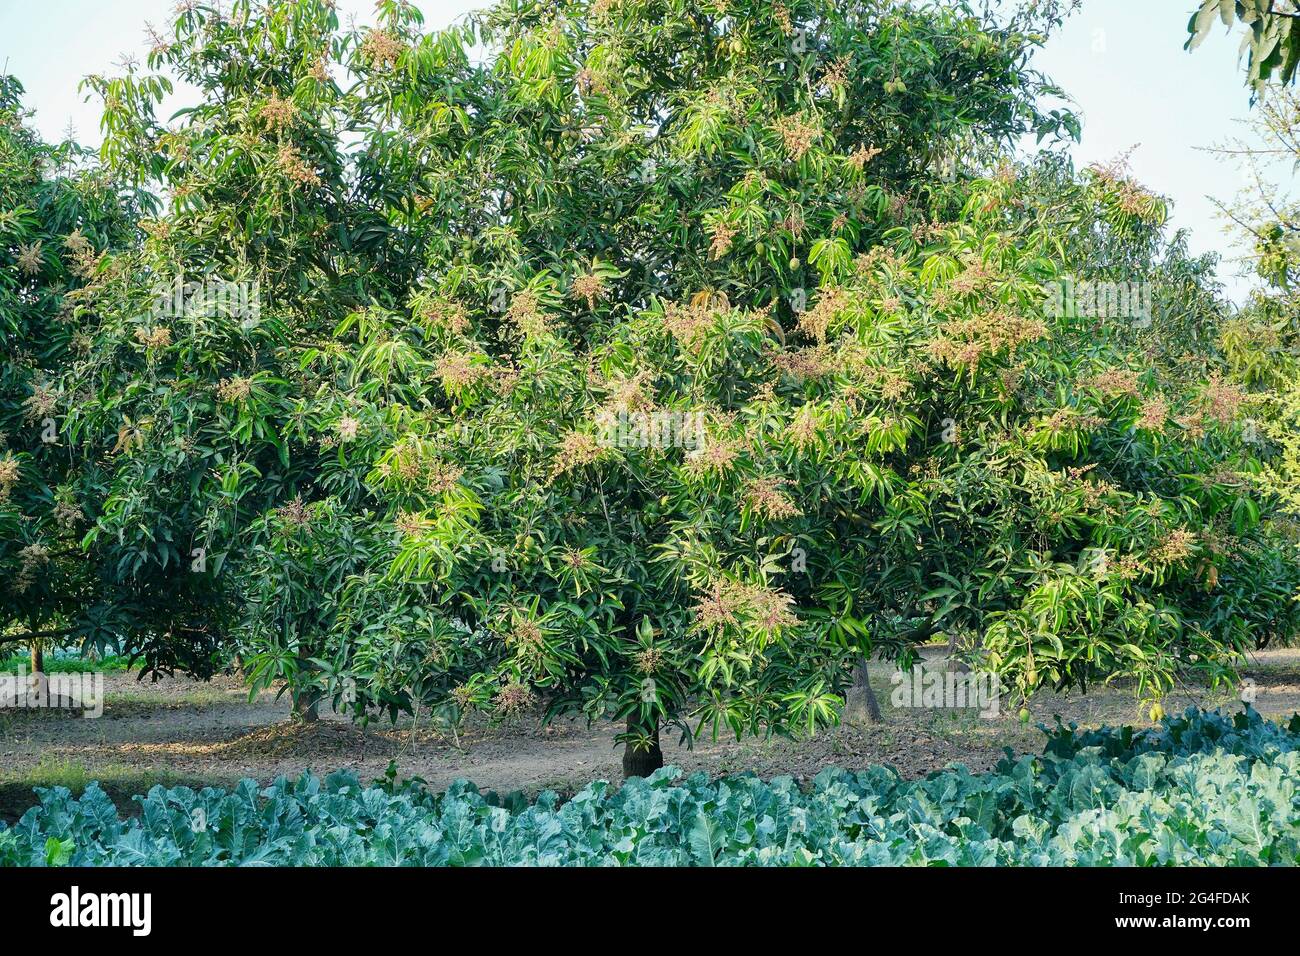 Mangifera indica, comúnmente conocida como mango, una especie de planta florida - con flor en el campo agrícola rural de bengala occidental, India. Foto de stock